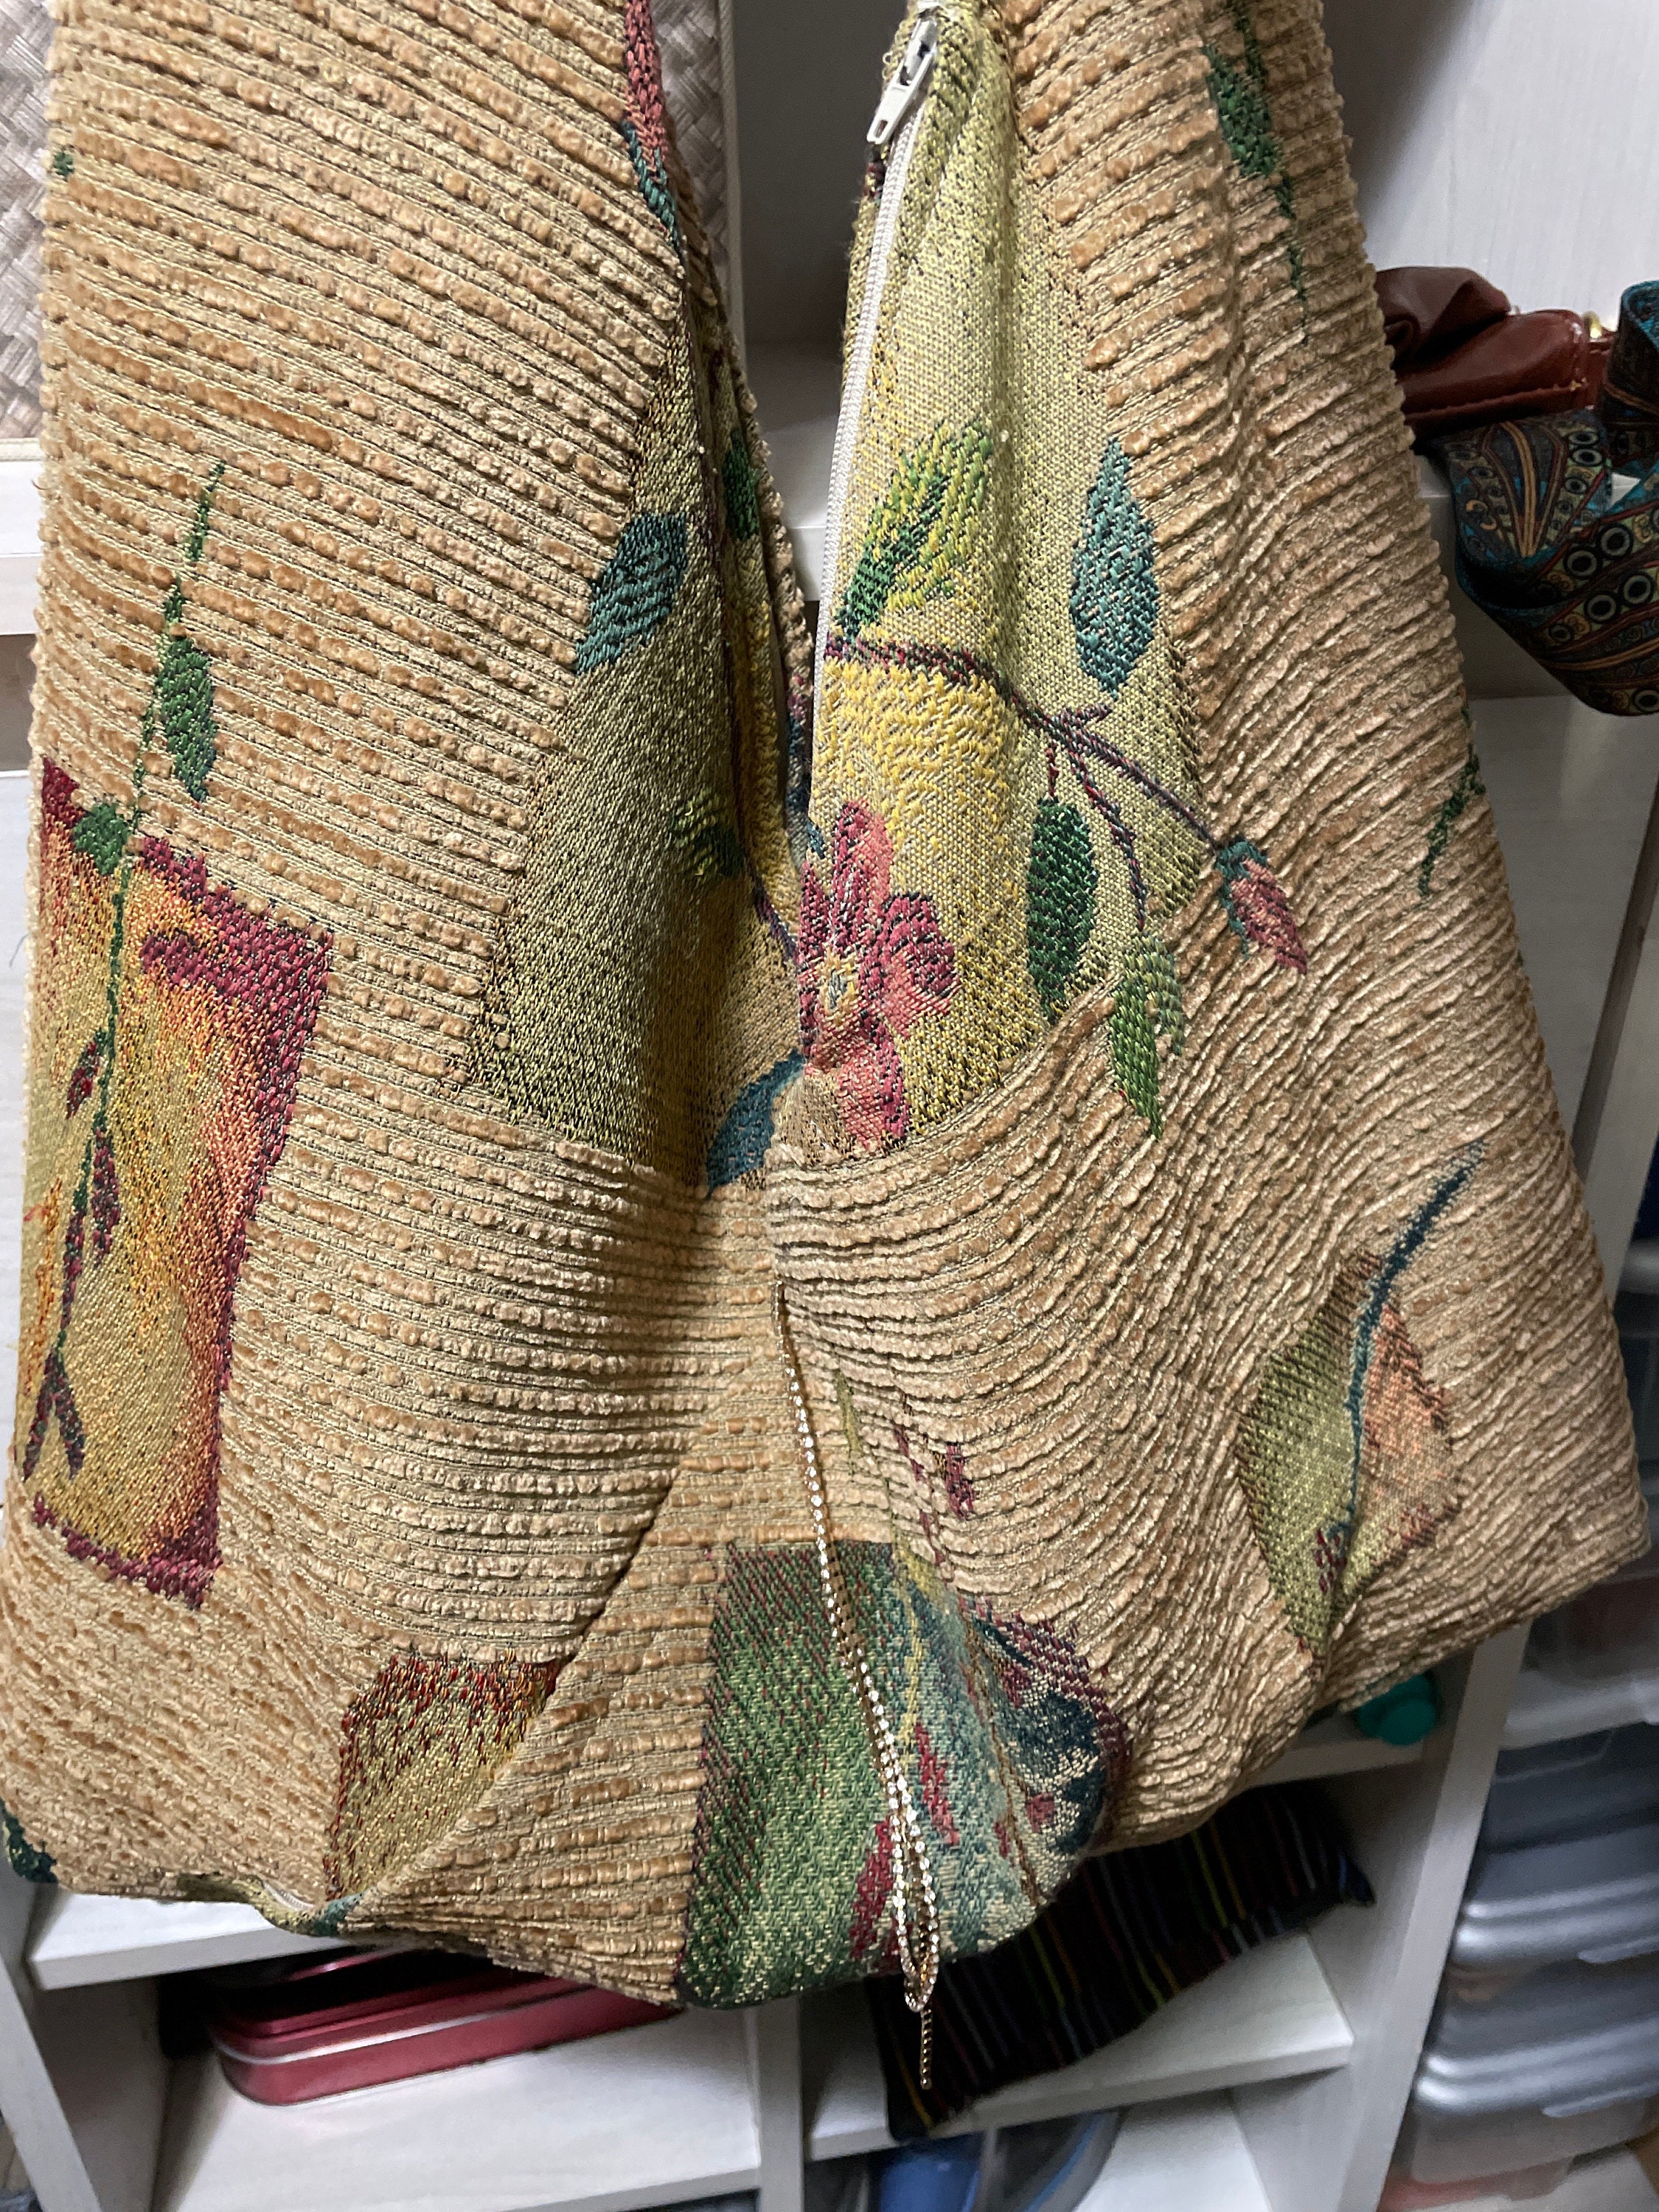 kimono bags – Japanese Sewing, Pattern, Craft Books and Fabrics